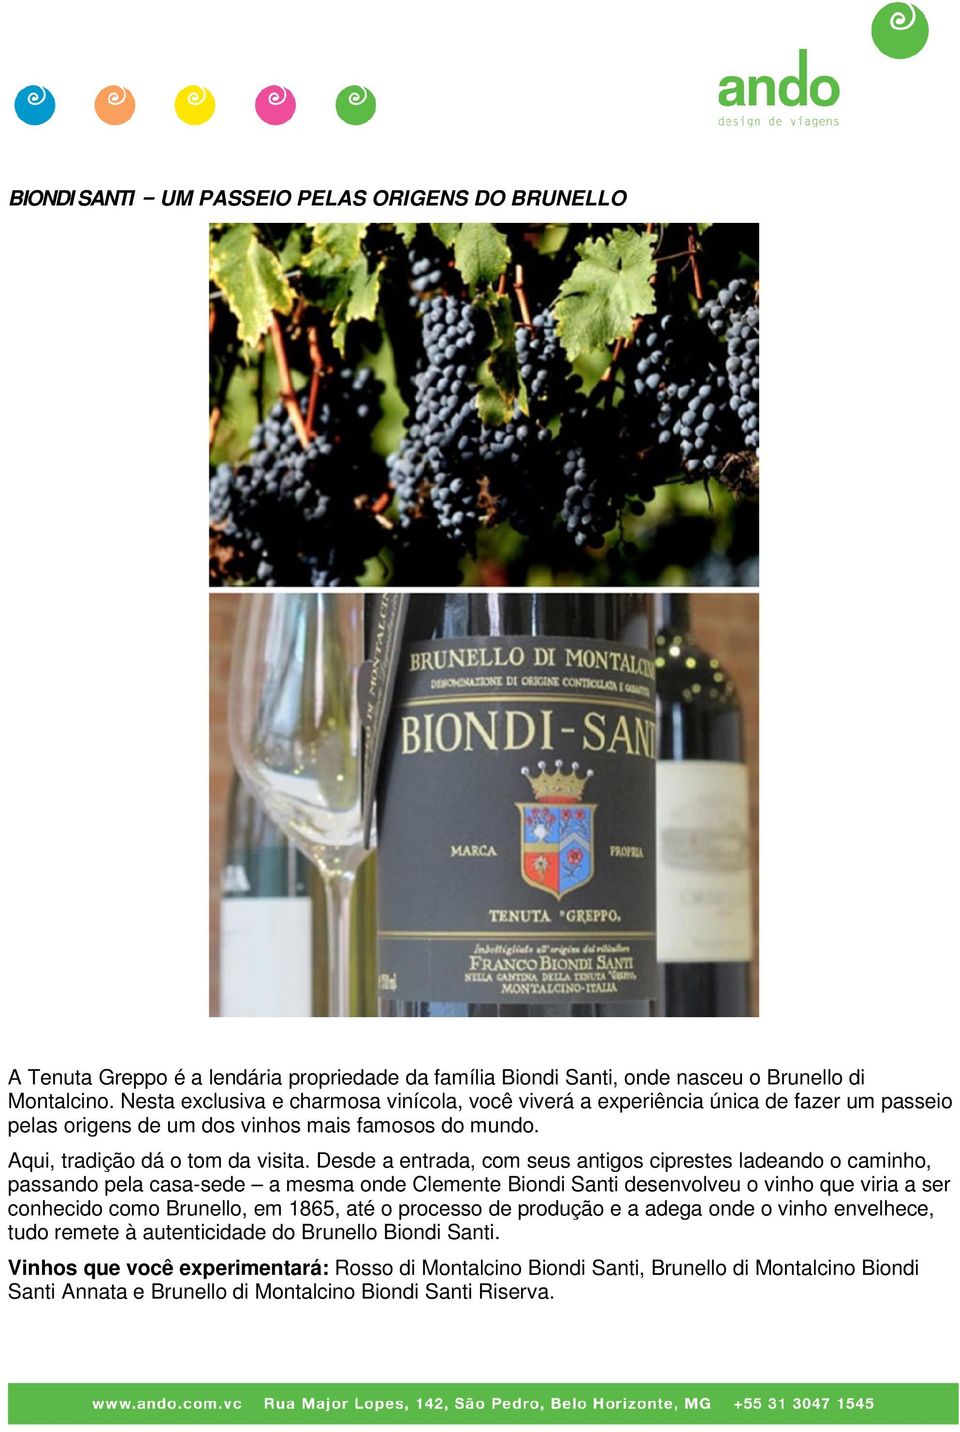 Desde a entrada, com seus antigos ciprestes ladeando o caminho, passando pela casa-sede a mesma onde Clemente Biondi Santi desenvolveu o vinho que viria a ser conhecido como Brunello, em 1865, até o